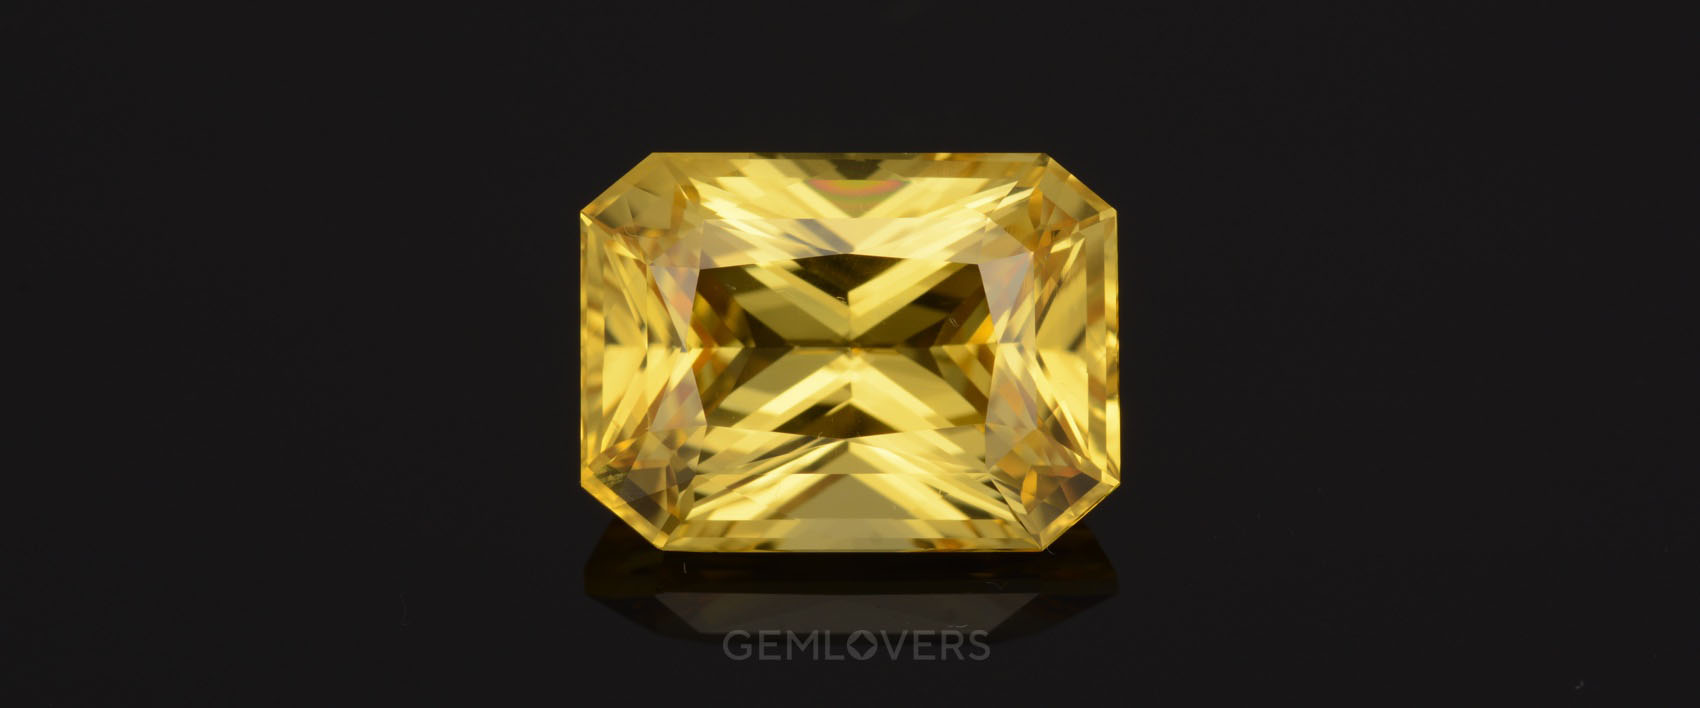 Камень желтый сапфир: стоимость, виды, цвета, масса, огранка иоблагораживание. Как распознать подделку